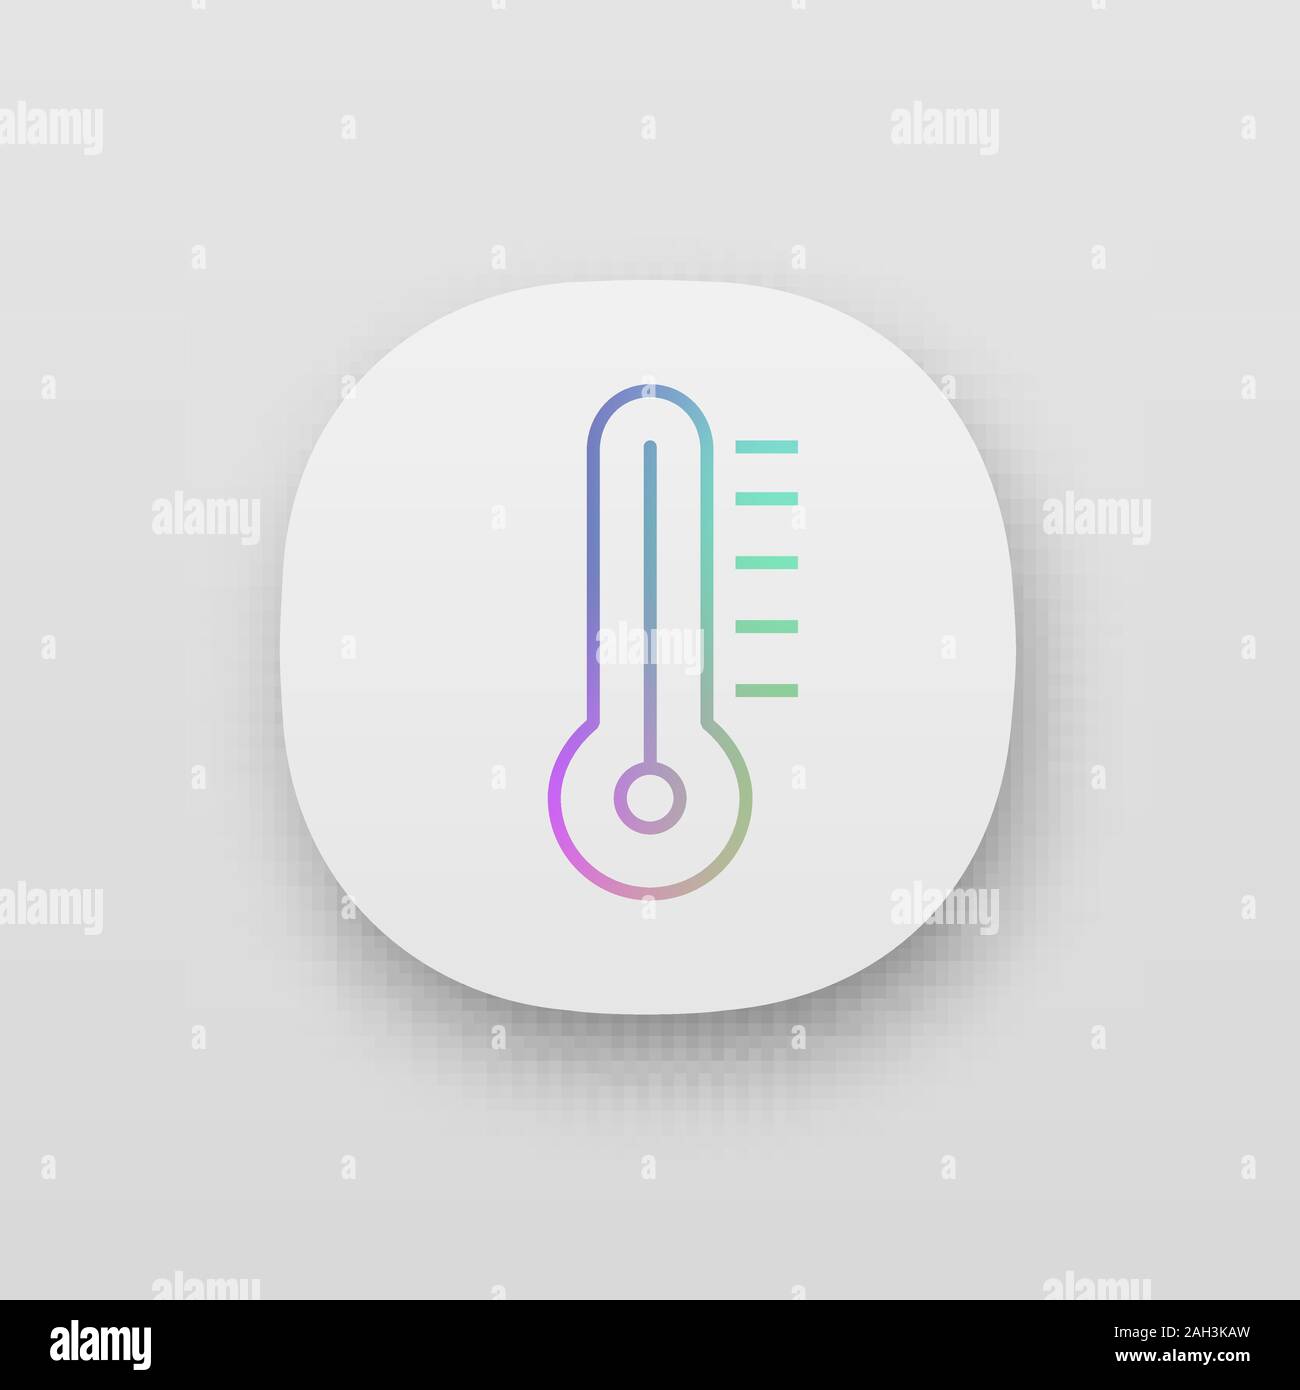 Thermometer app icon. Air temperature measurement. UI UX user